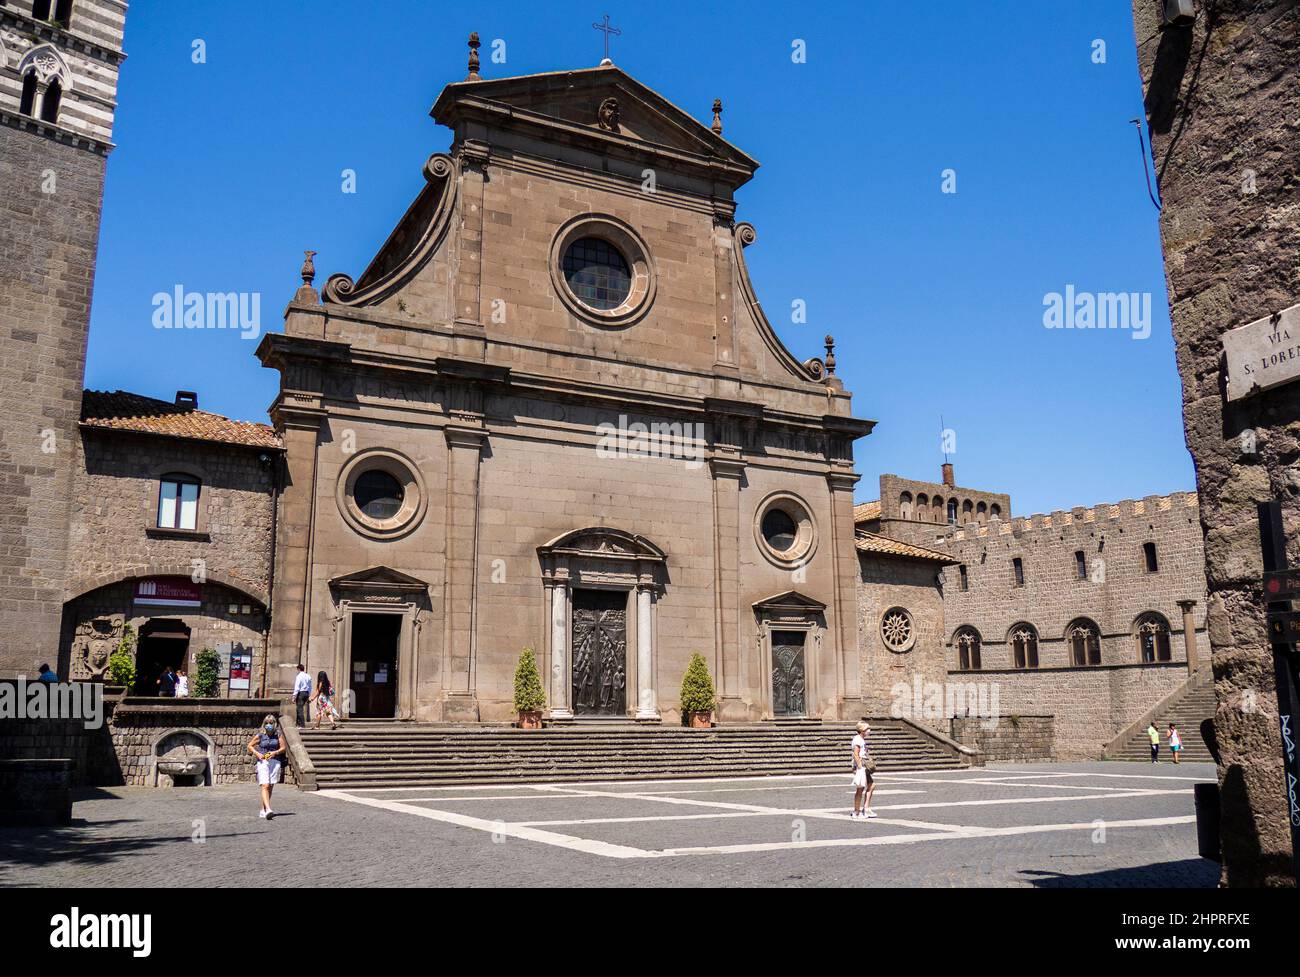 La cathédrale de San Lorenzo, Viterbe, Latium, Italie Banque D'Images